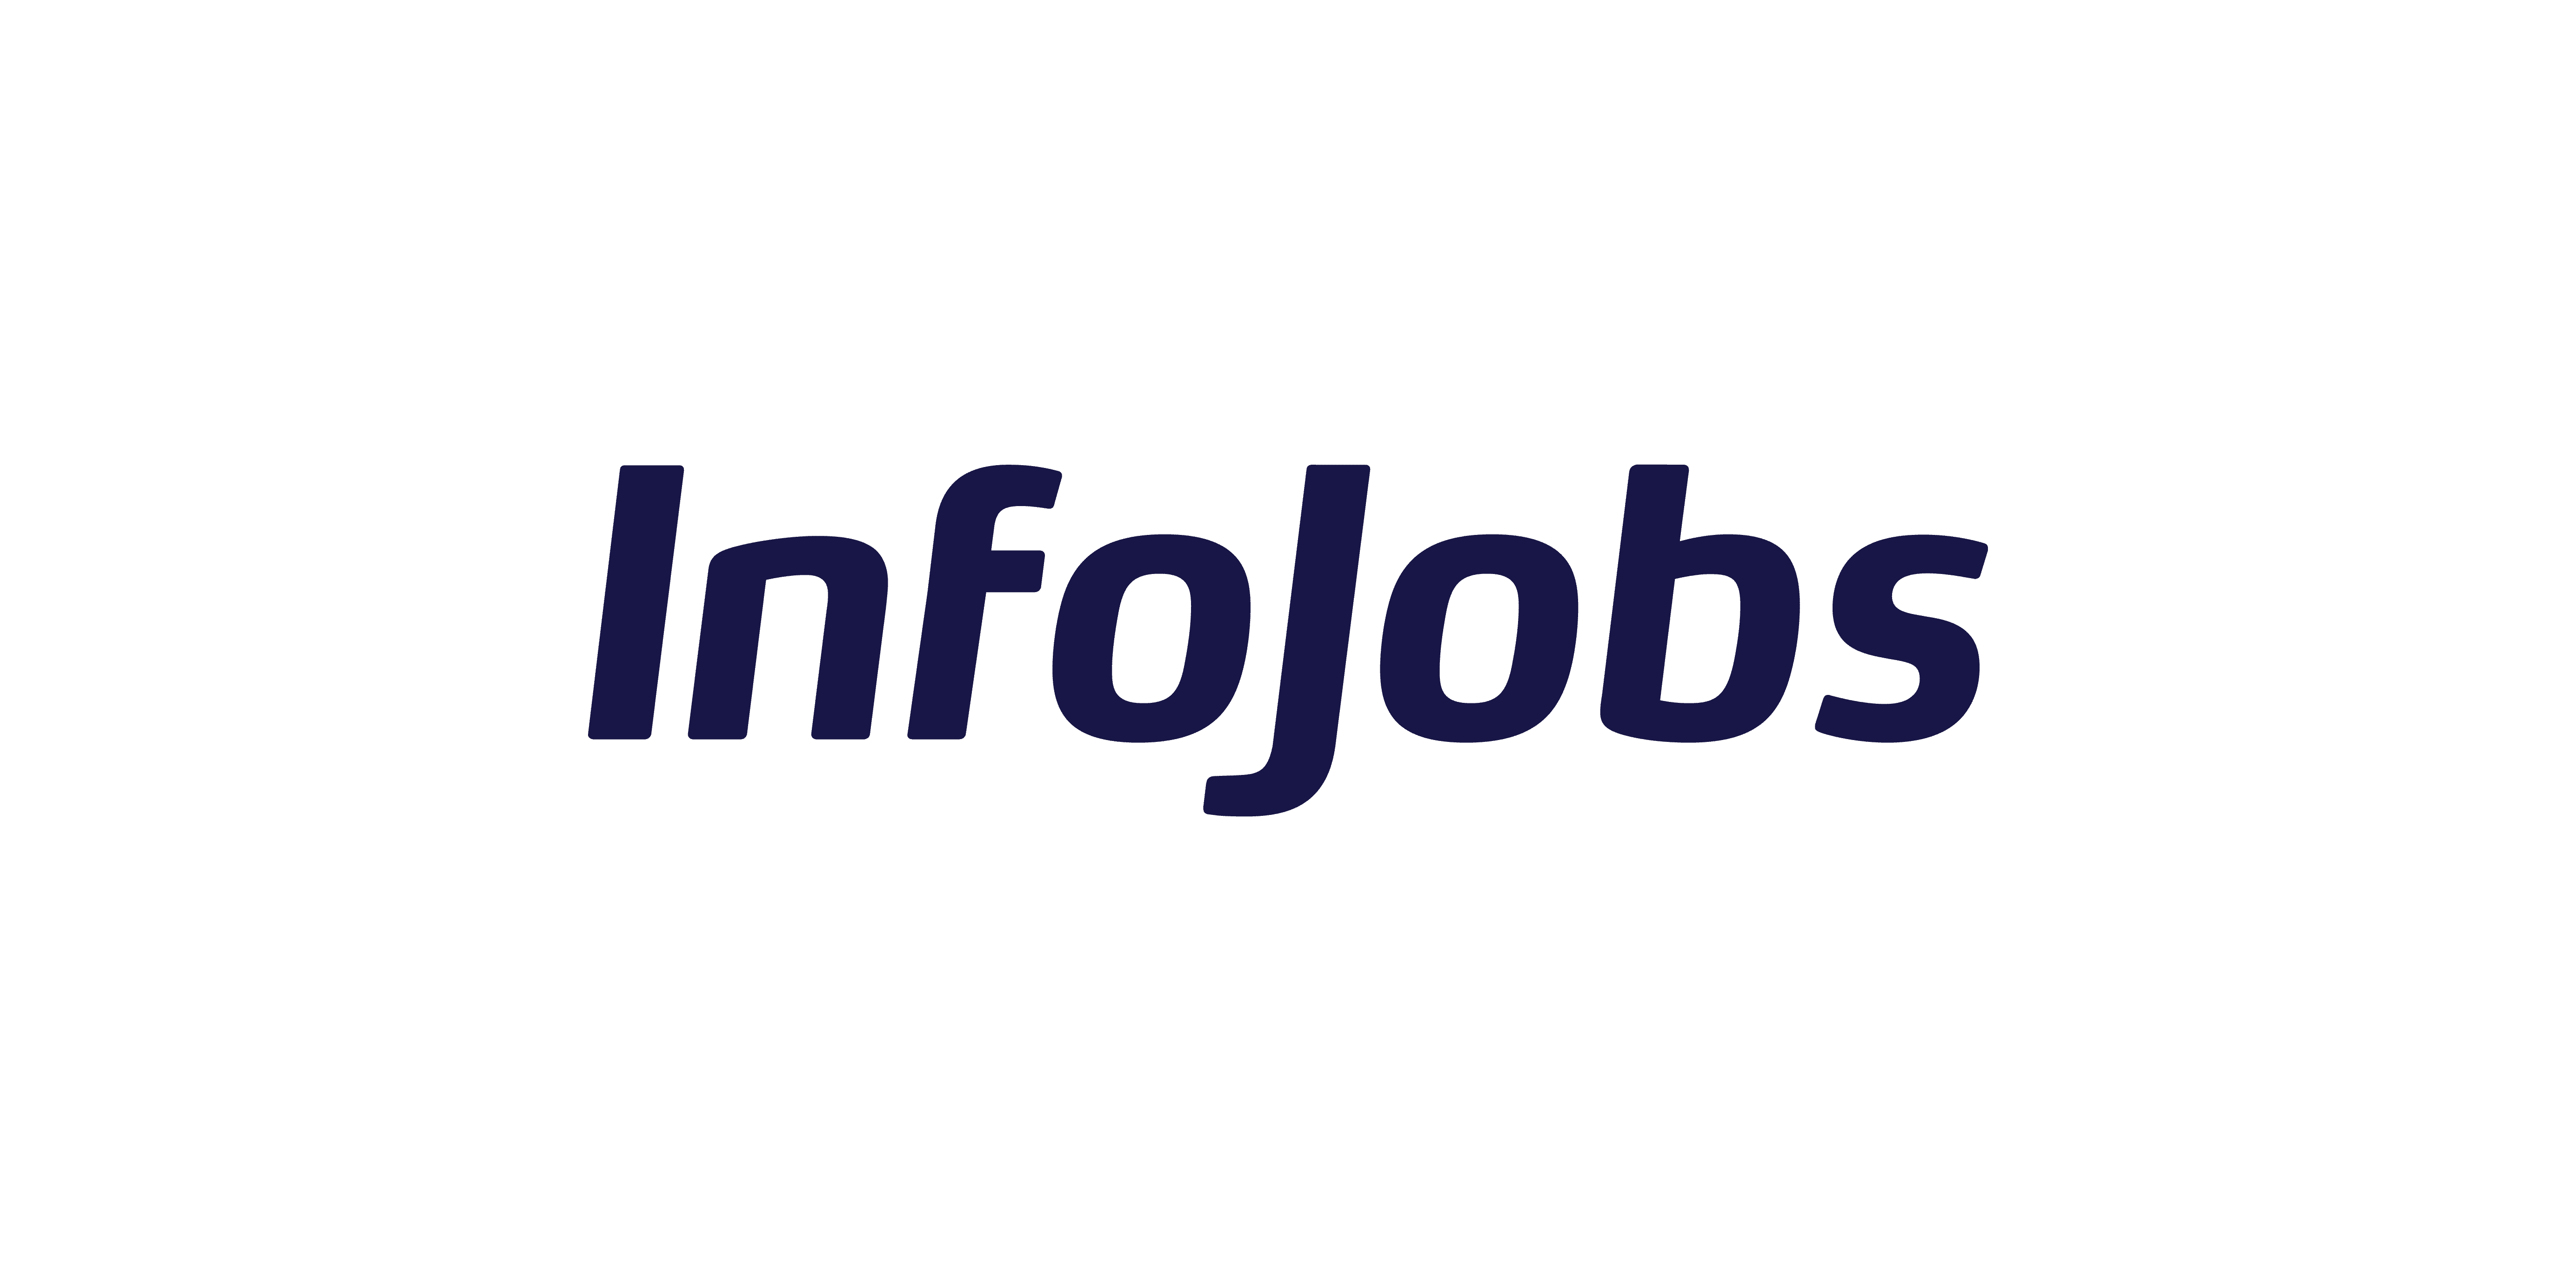 logo-infojobs